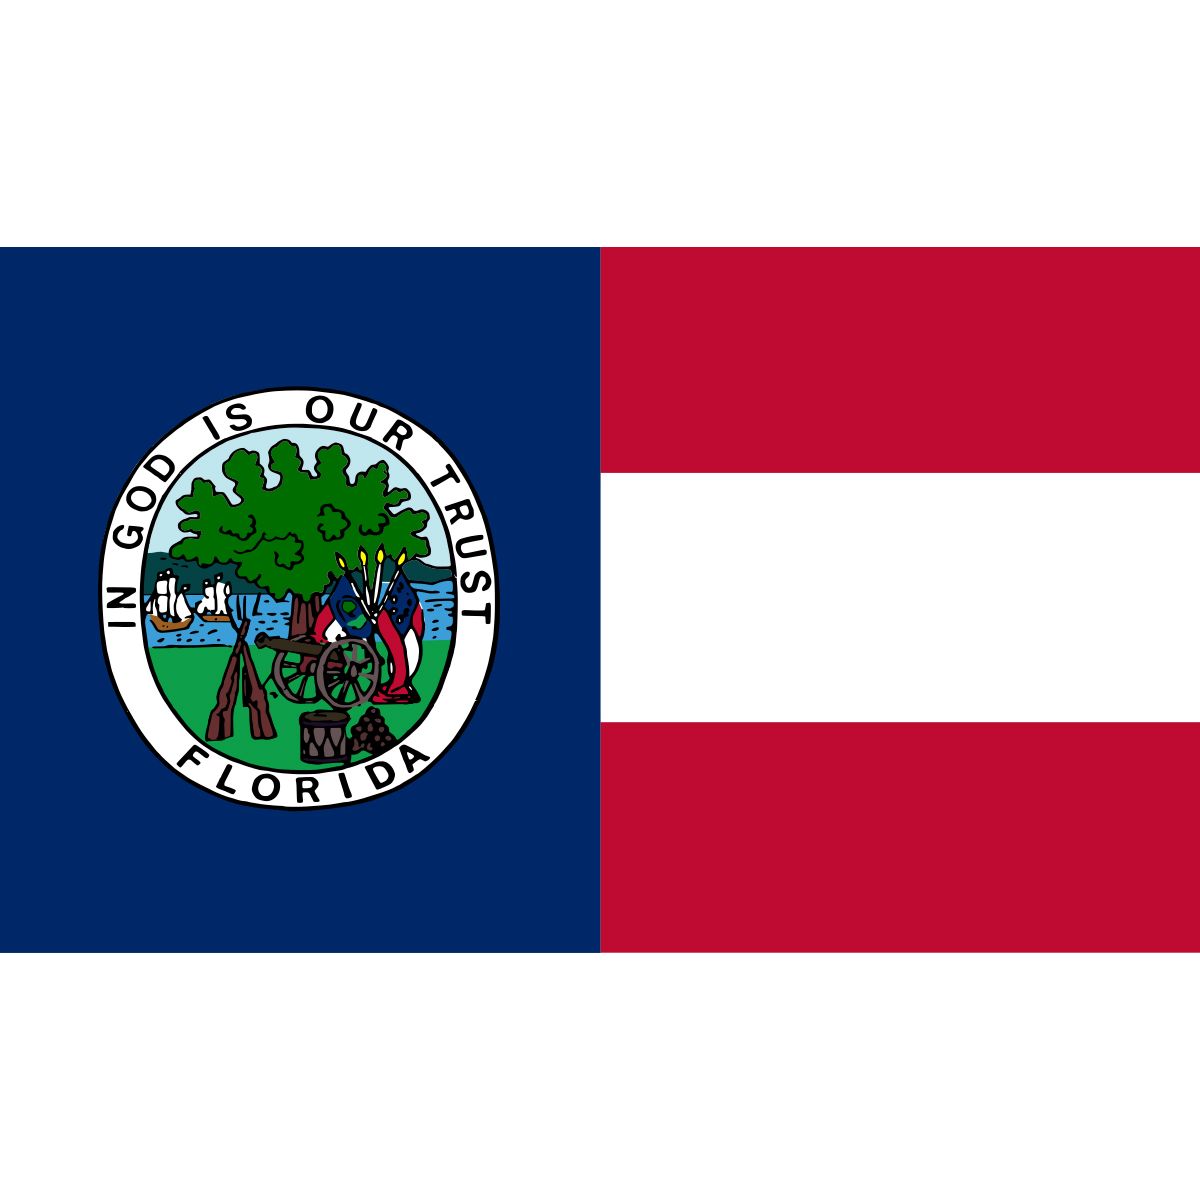 My Republic of Louisiana flag (February, 1861)